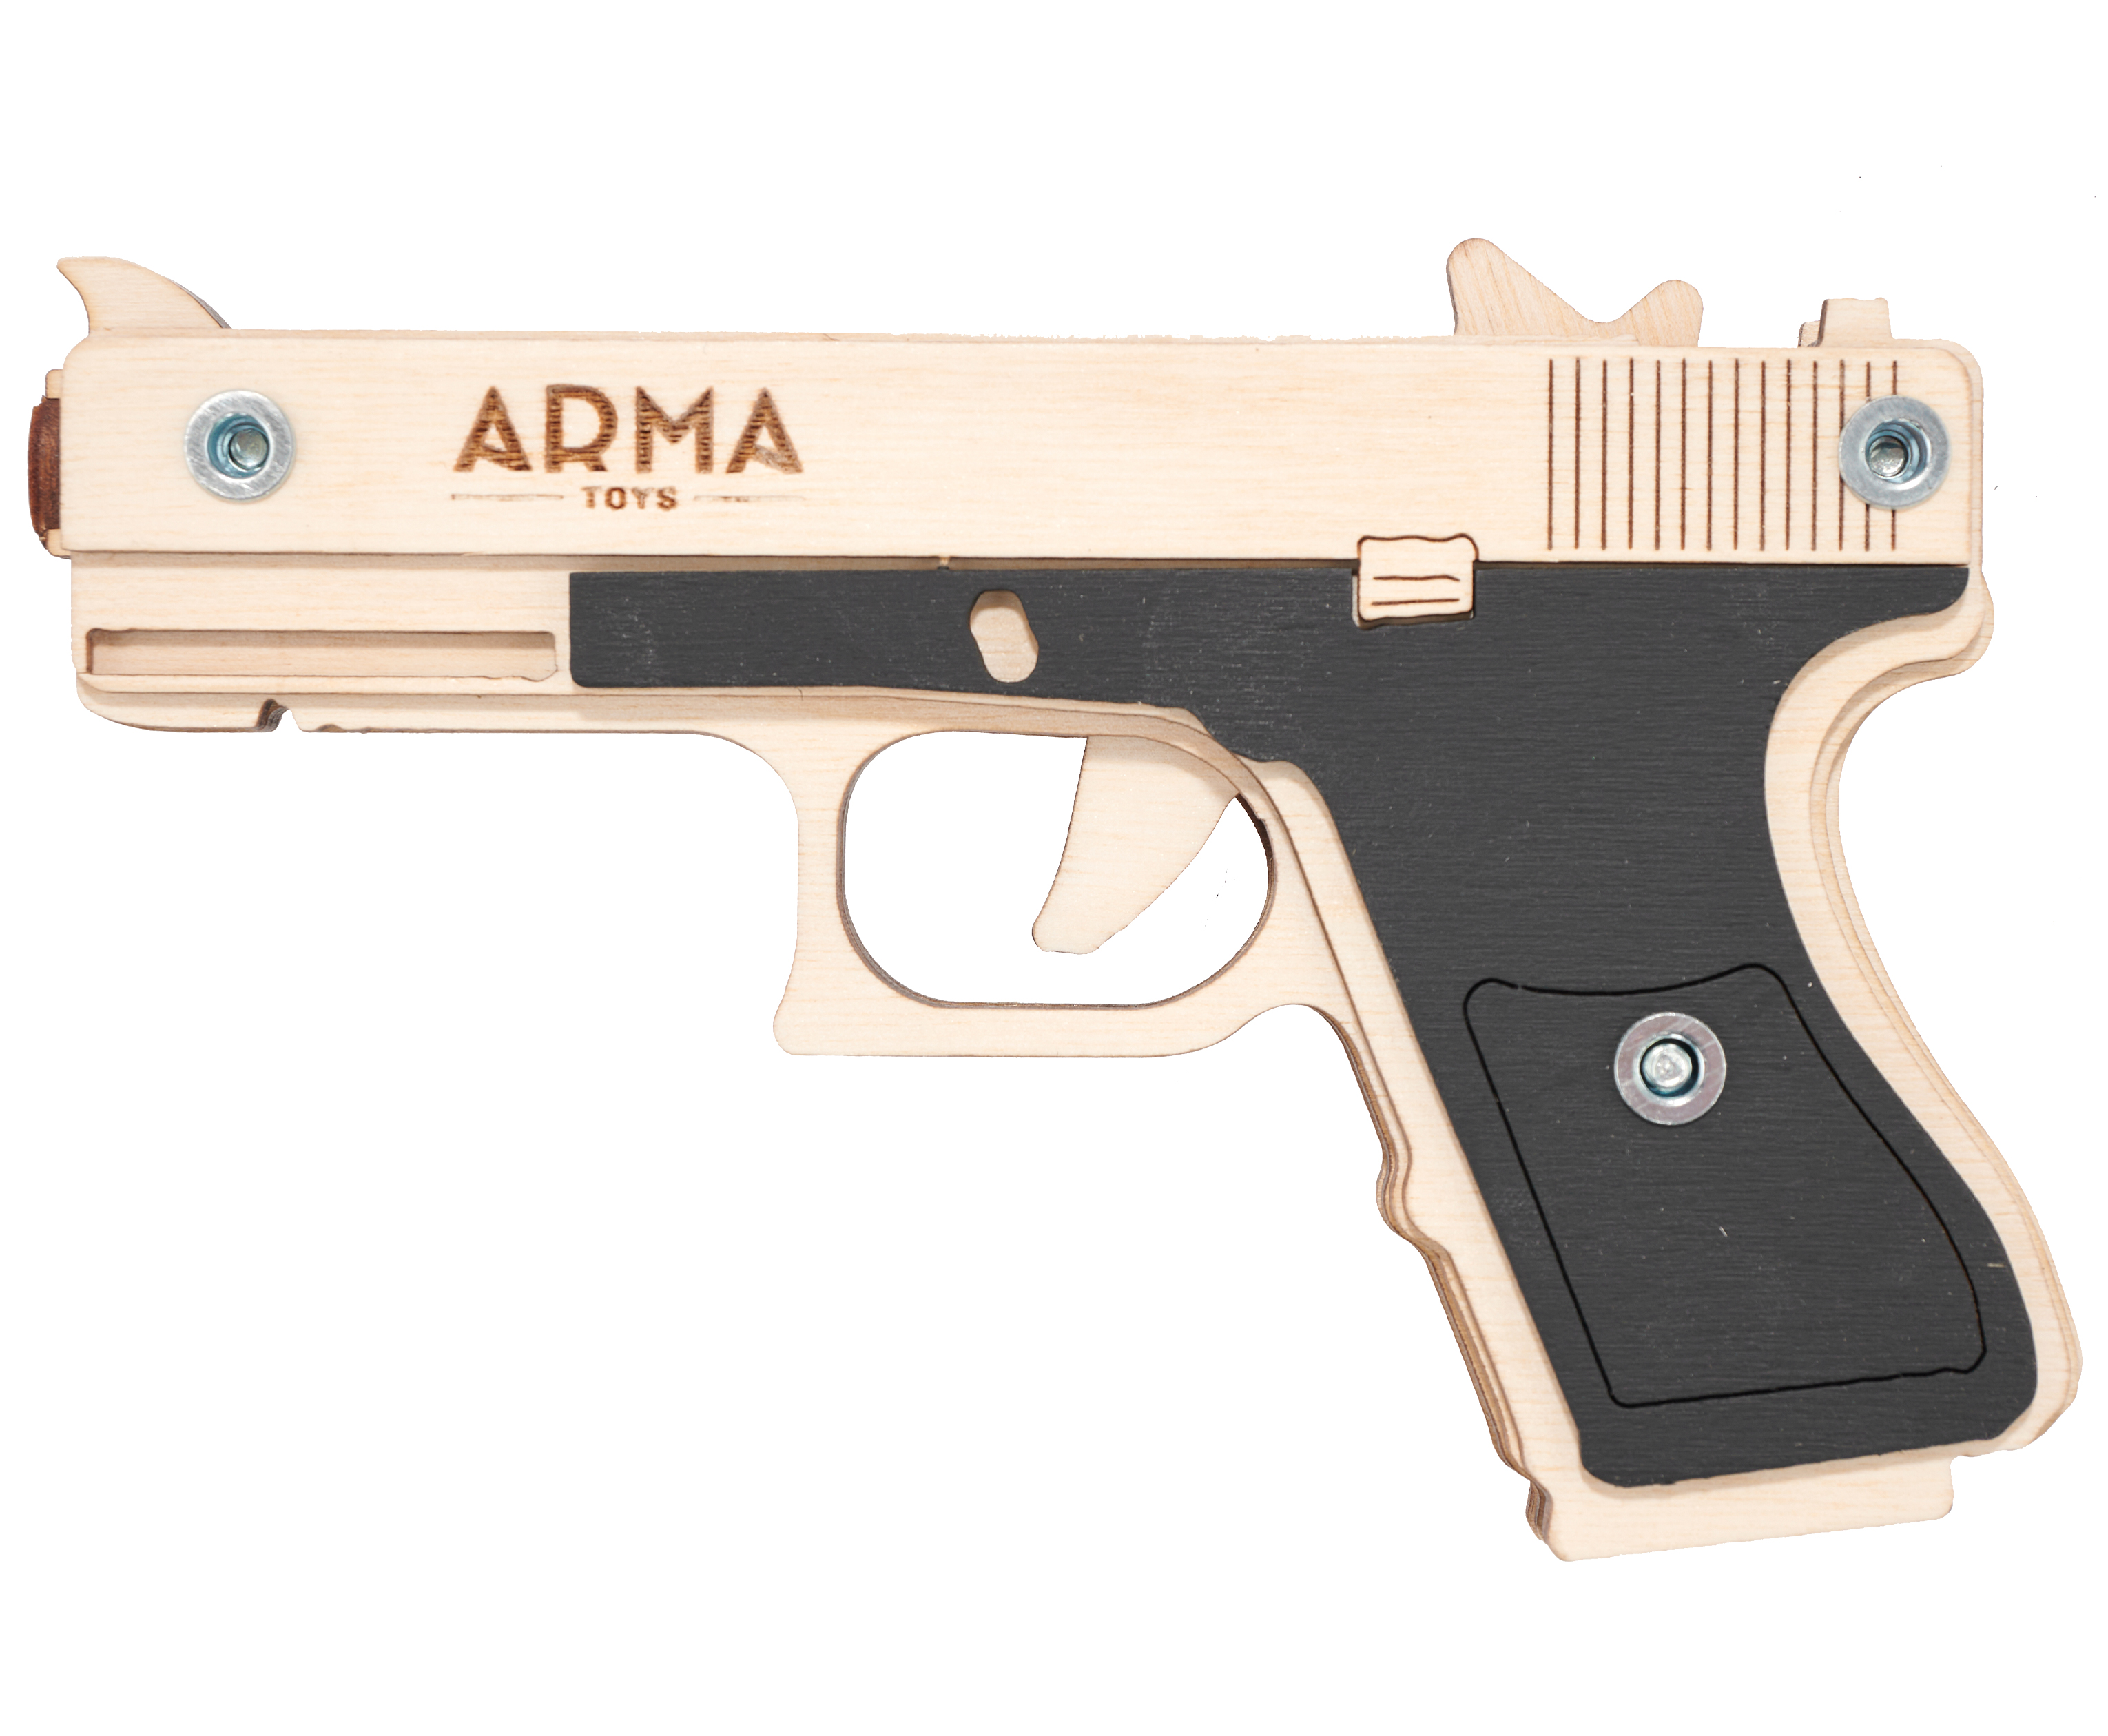 Резинкострел игрушечный Arma toys пистолет Glock Light макет, Глок 26, AT027, окрашенный резинкострел arma toys пистолет апс макет стечкин ат009